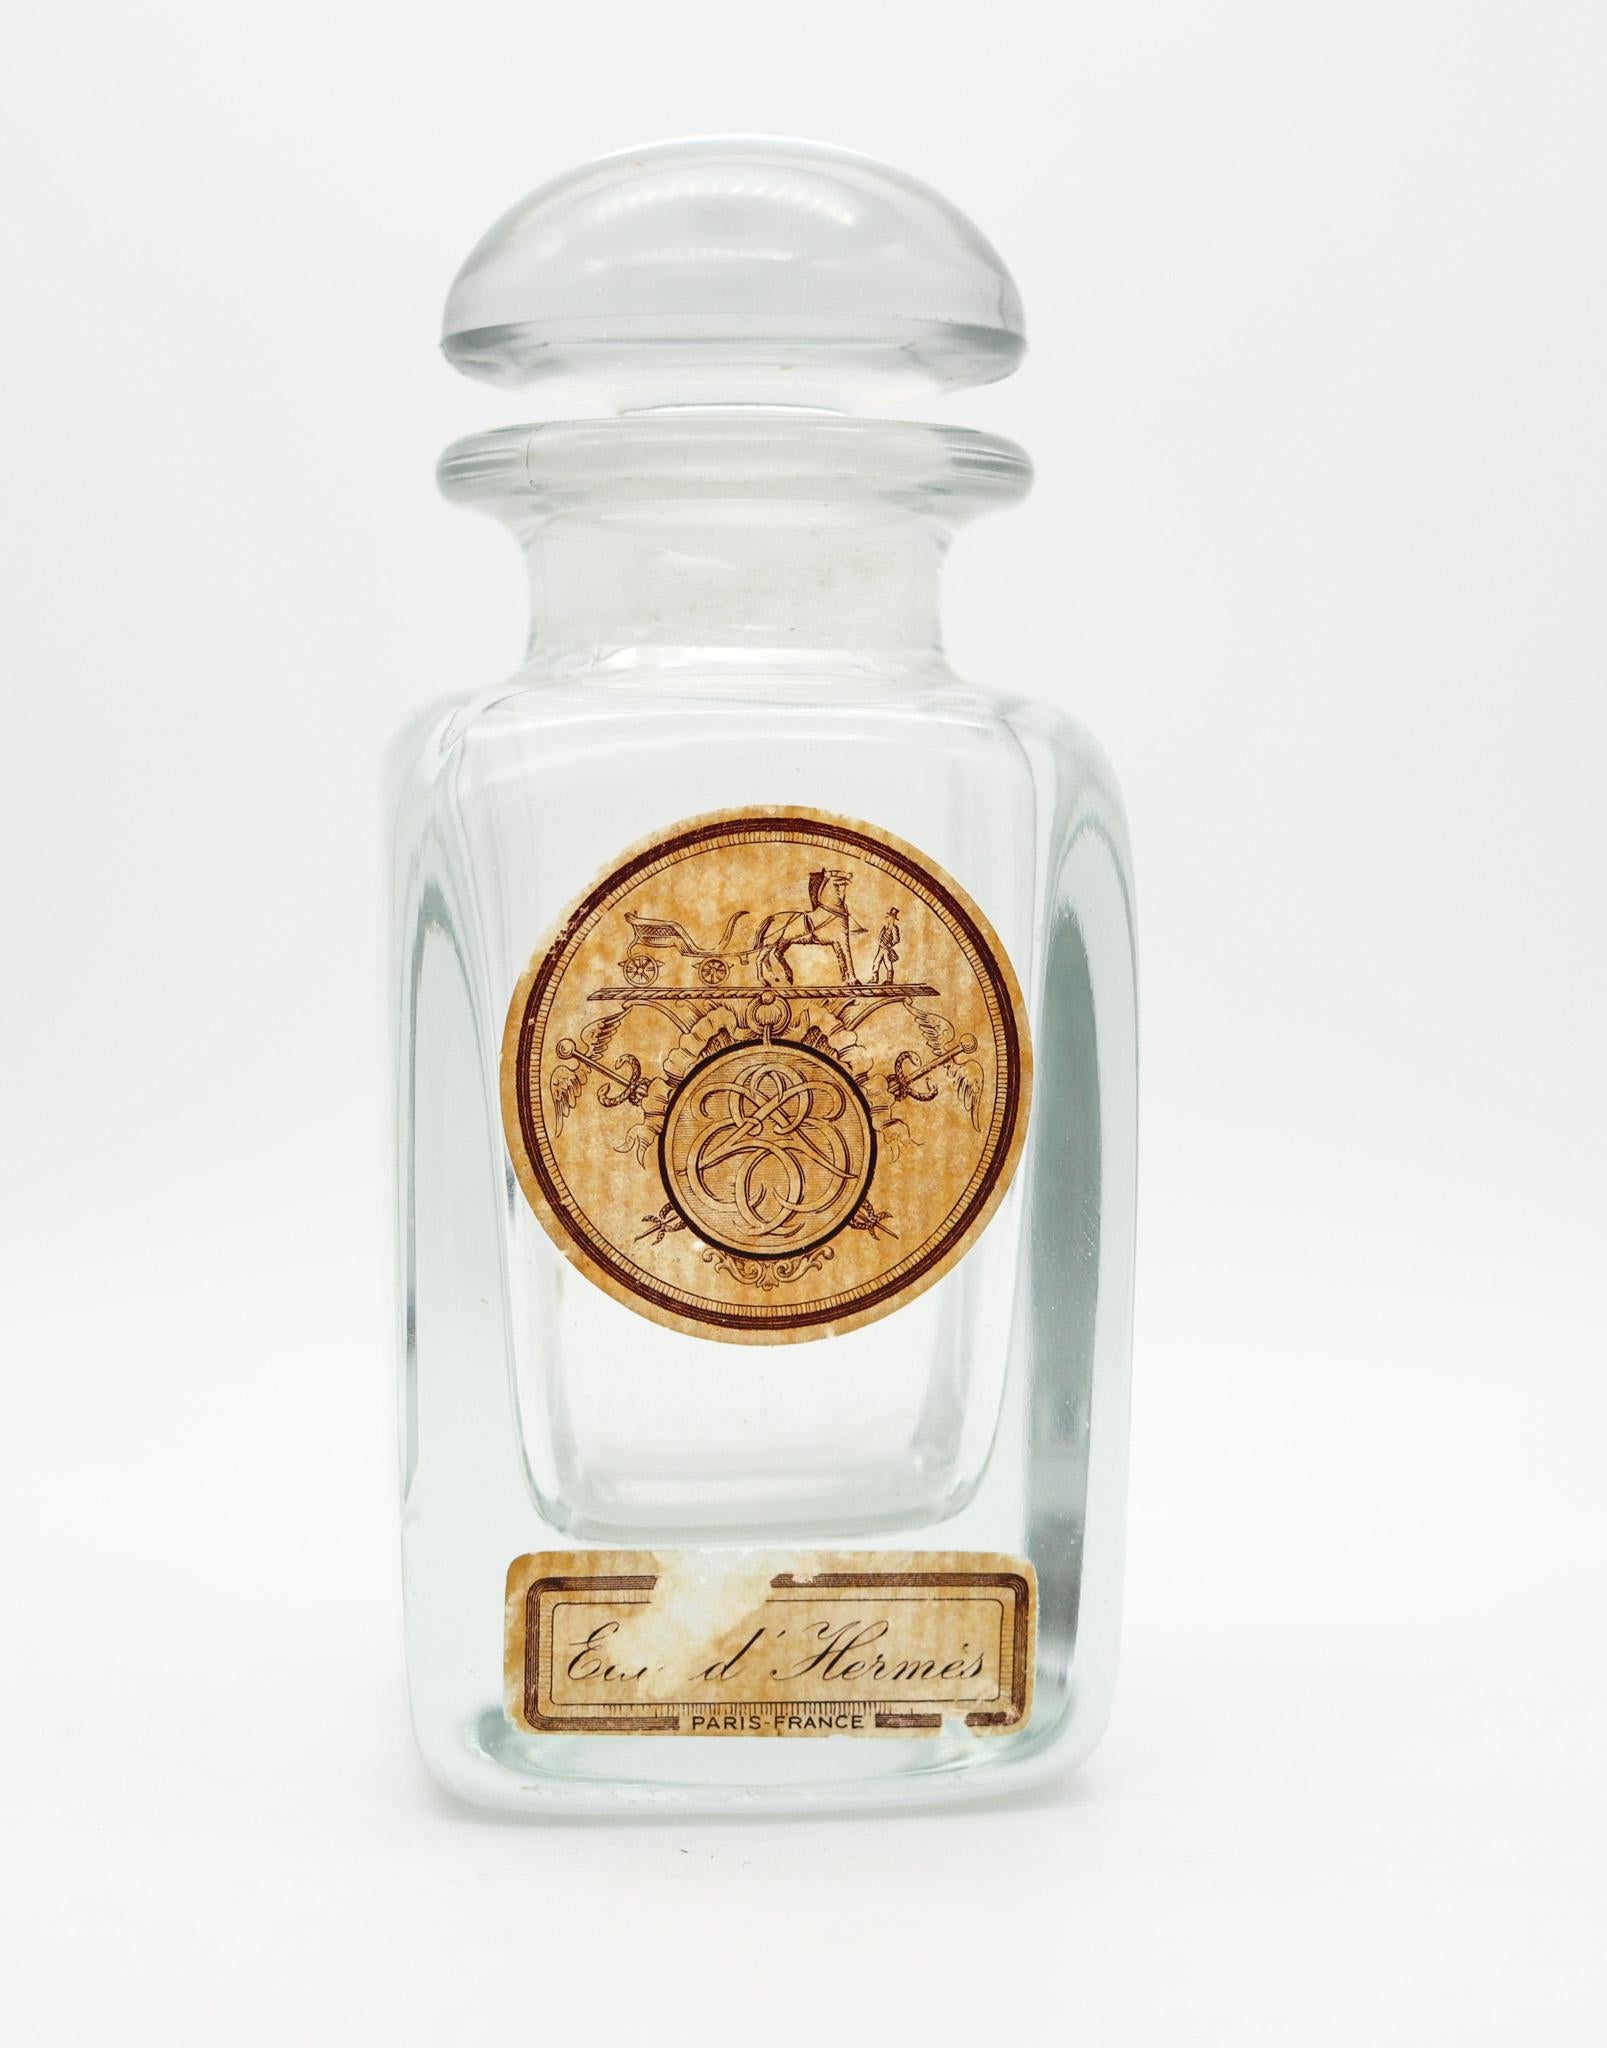 Flacon de parfum vintage de la marque Hermes.

Très beau flacon d'Eau d'Hermes, fabriqué à Paris par la maison de couture Hermes, dans les années 1950. Ce grand flacon a été réalisé en cristal transparent pressé, très épais et audacieux, et est